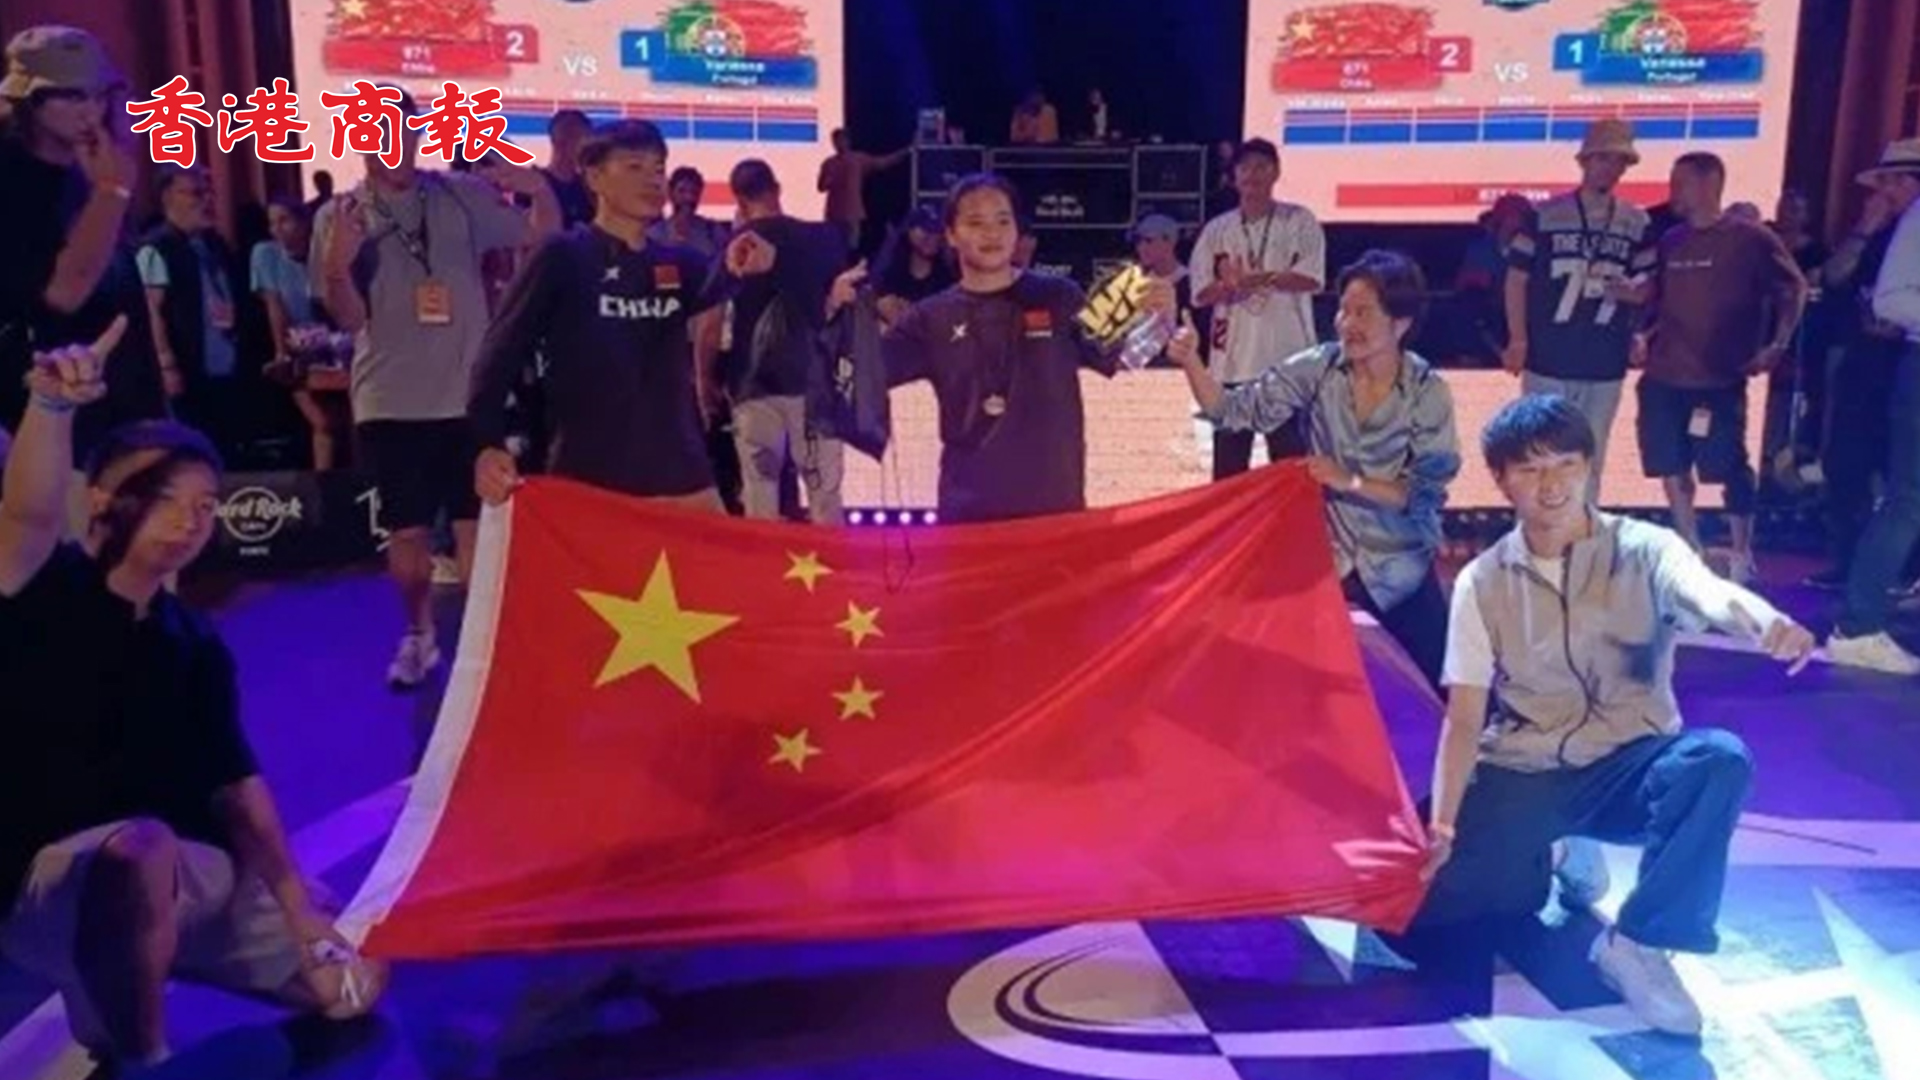 有片 | 中國16歲女孩再次奪冠 劉清漪再獲國際霹靂舞比賽冠軍